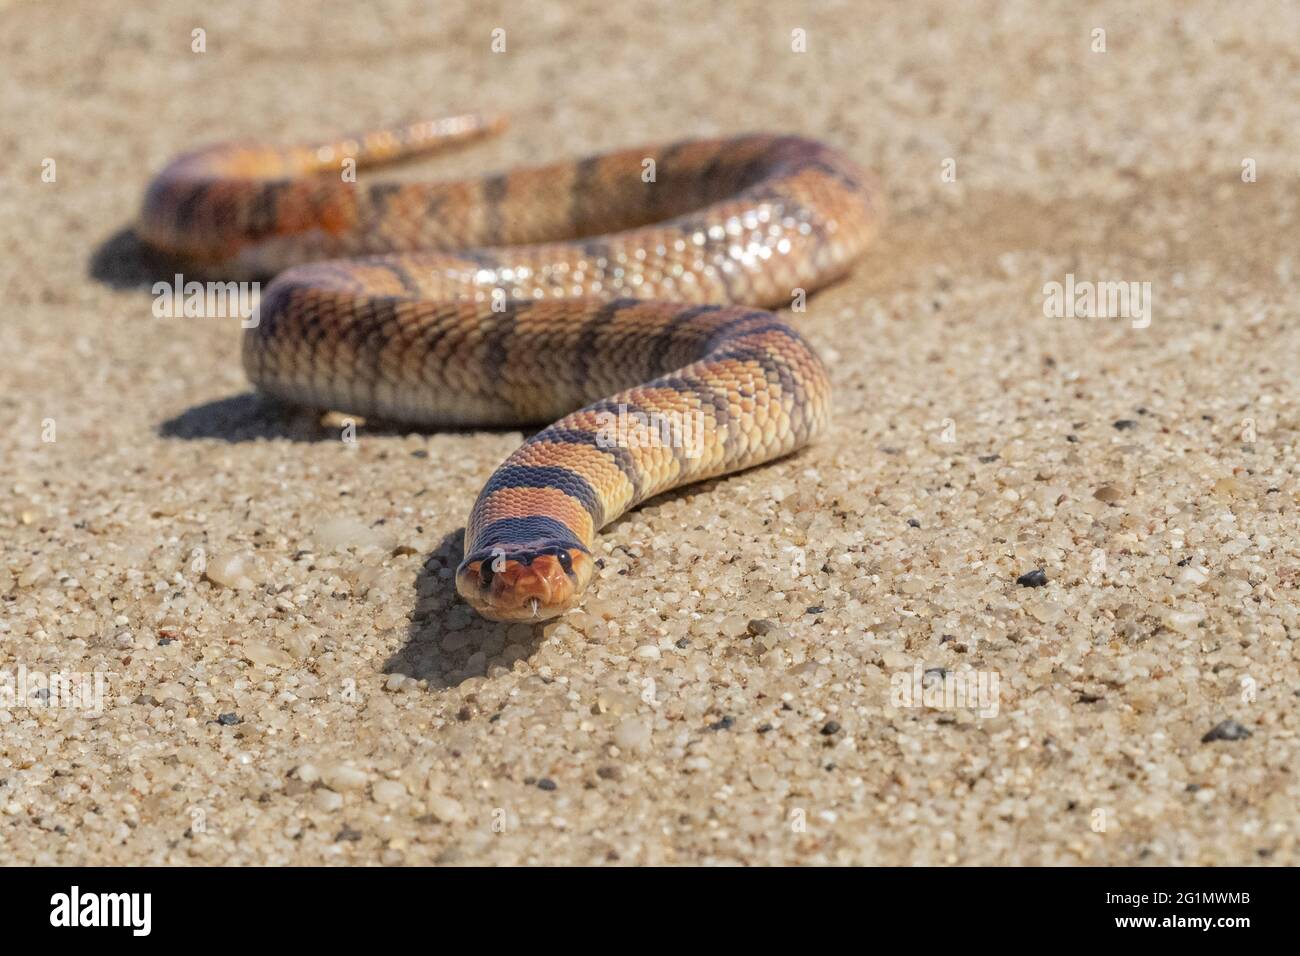 Namibie, Swakopmund, parc national de Dorob, serpent de Corail (Aspidelaps lubricus lubricicus) Banque D'Images